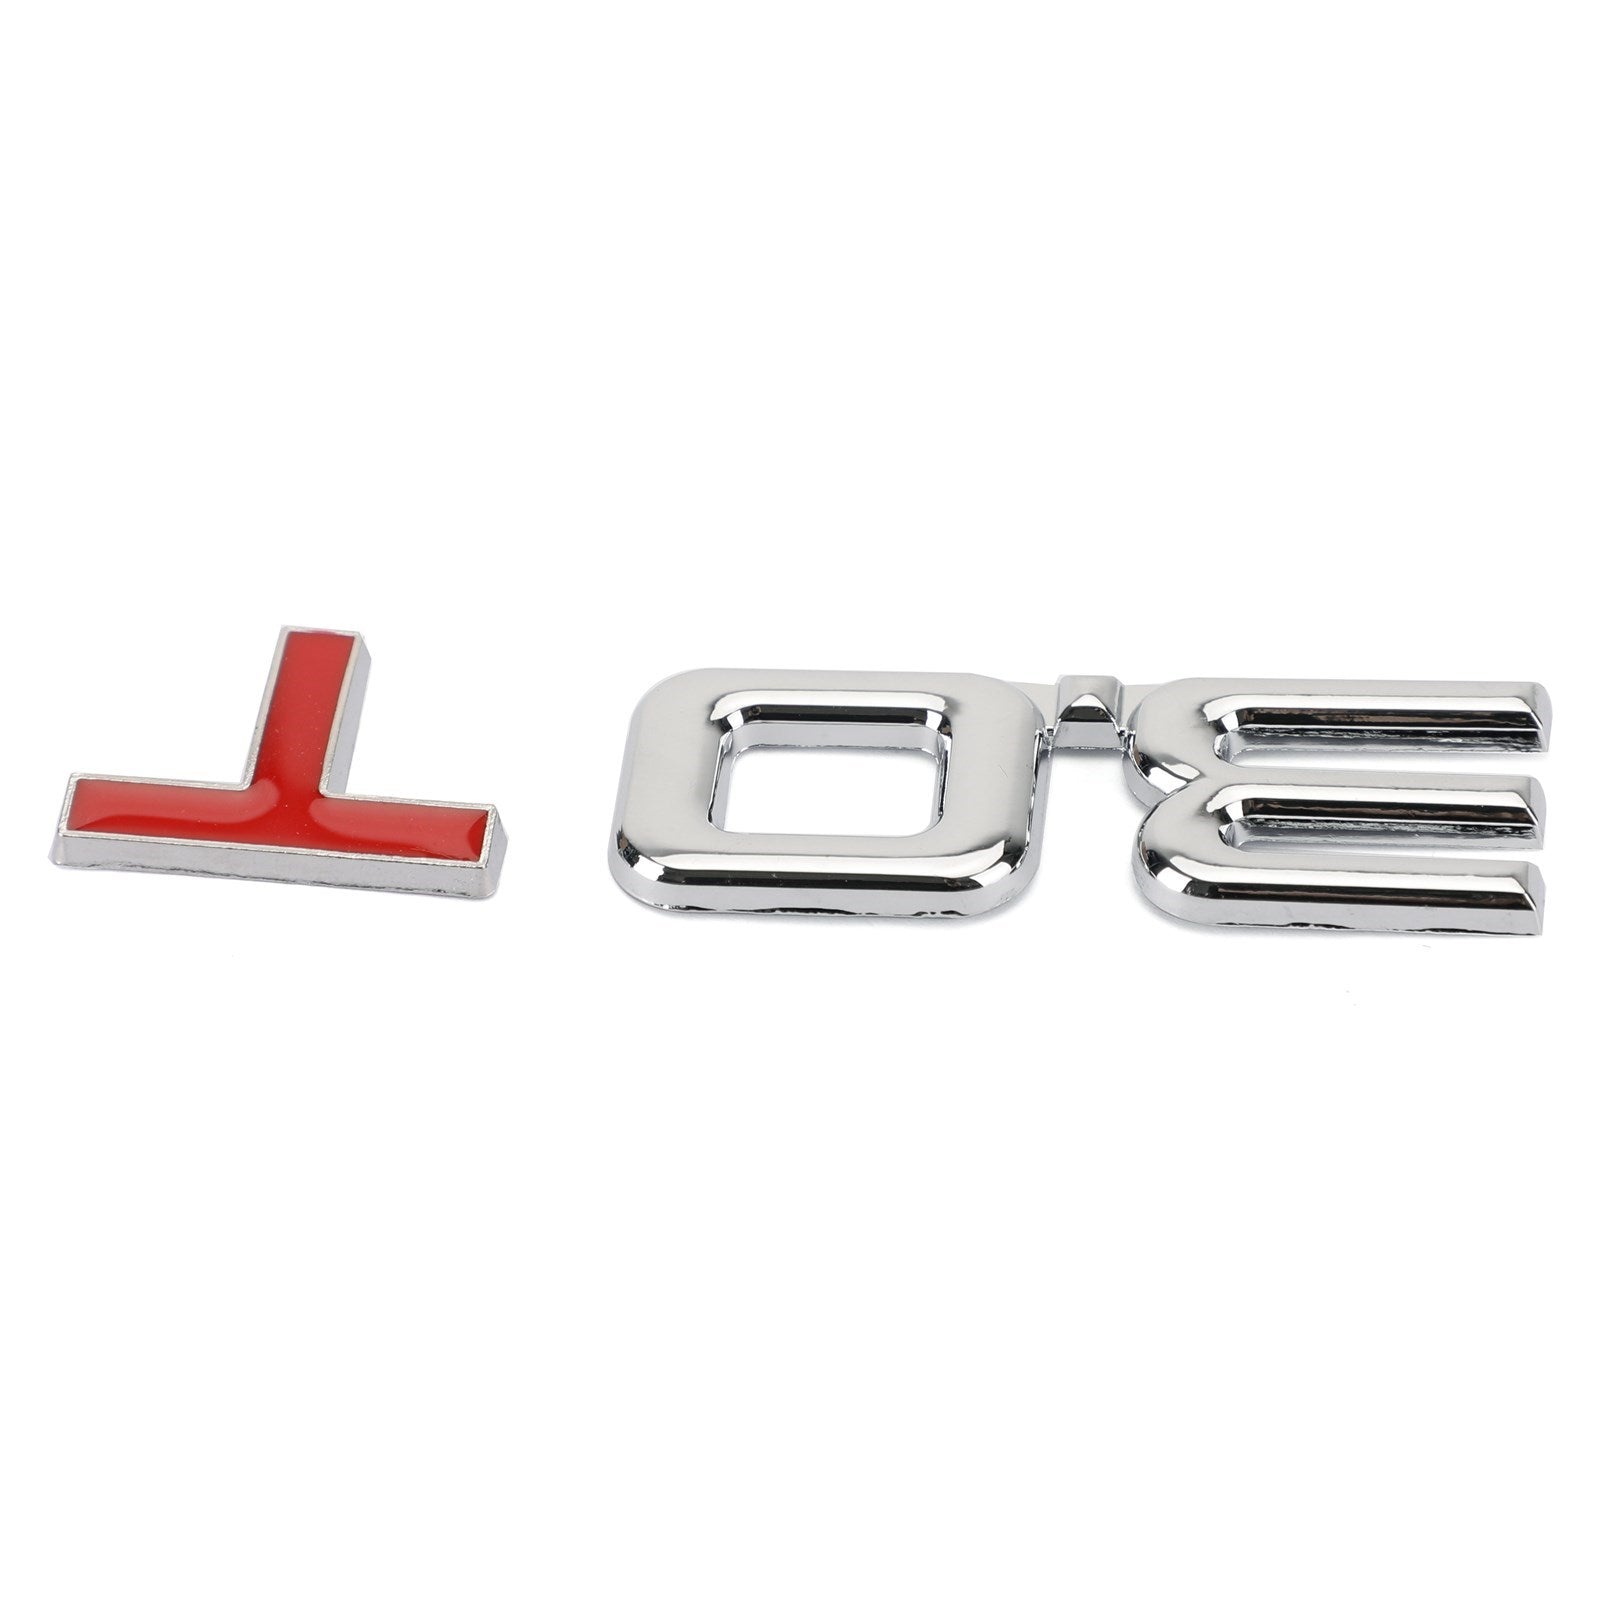 Etiqueta engomada de la insignia del emblema del metal 3D 3.0T para Audi A3 A4 A5 A6 A7 B6 B7 B8 Q3 Q5 Q7 TT genérico